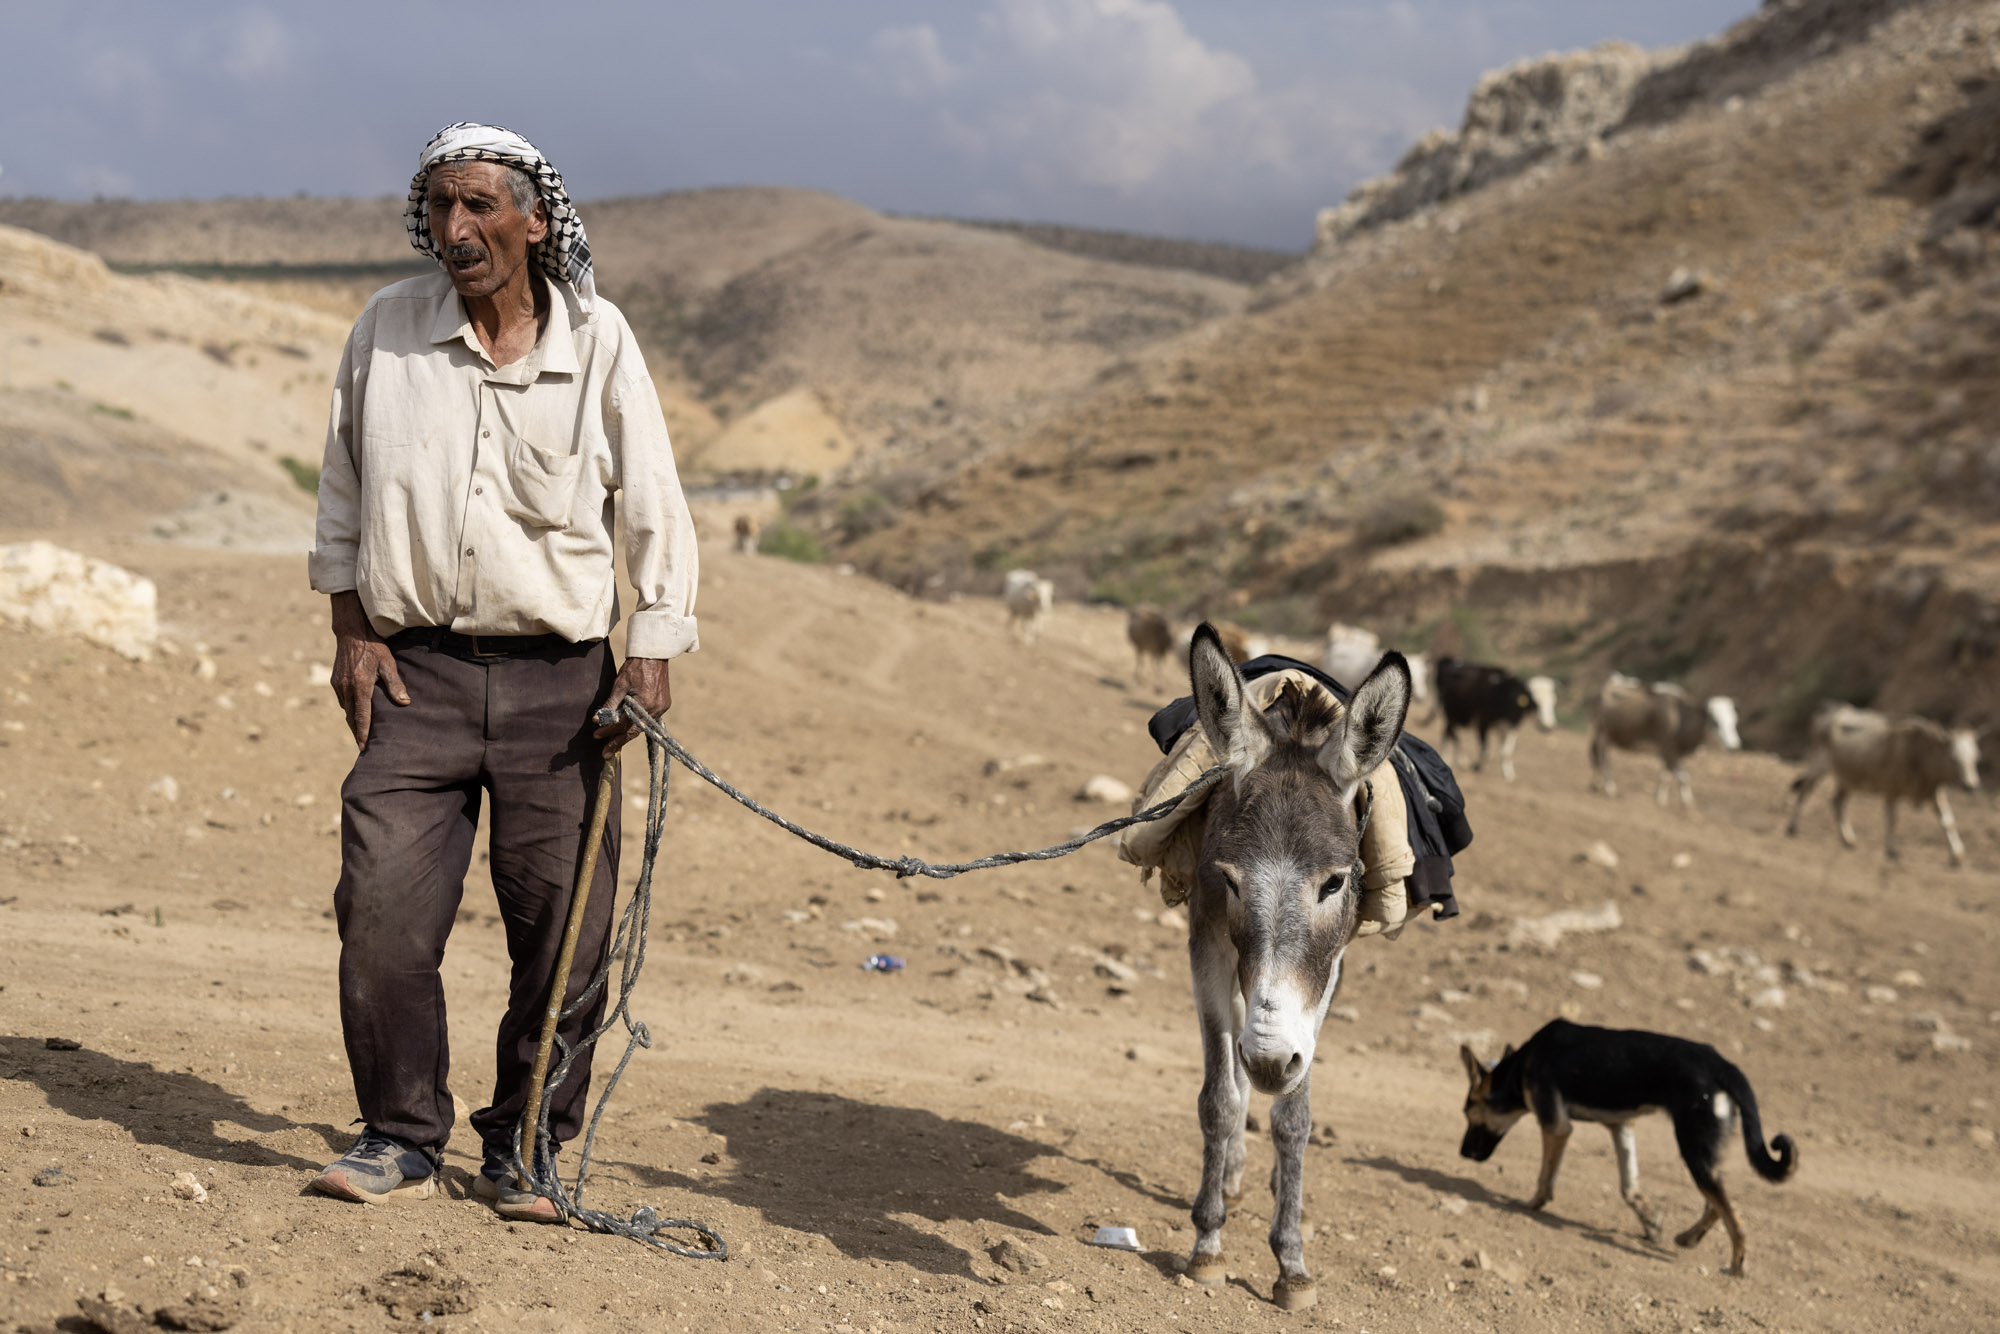 פתחי דררמה, מקהילת הרועים עין אל חילווה (צילום: אורן זיו)